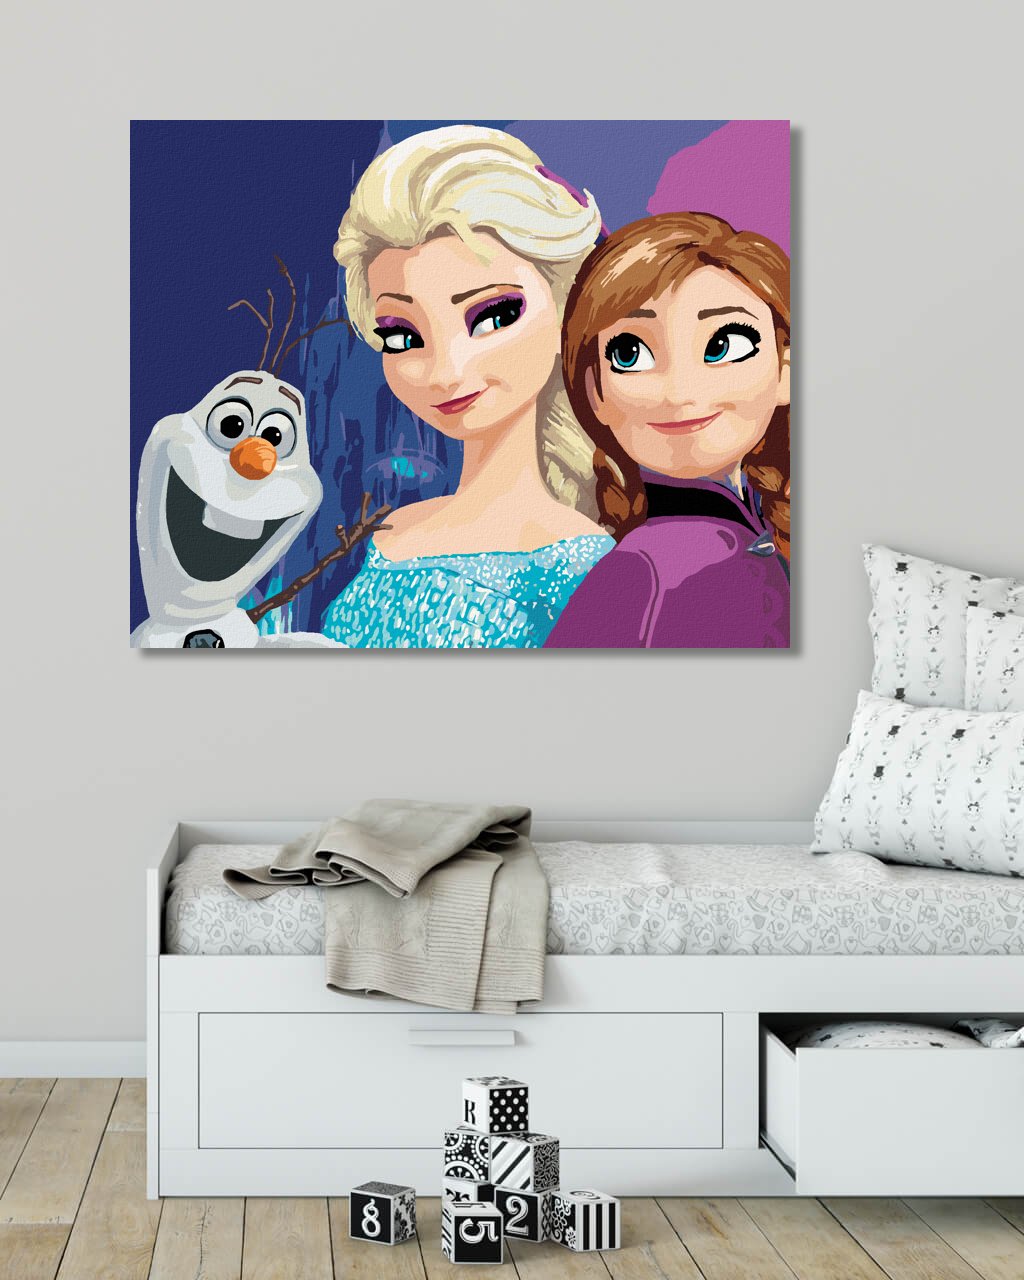 Diamantové malování. Ledové království - Anna, Elsa a Olaf